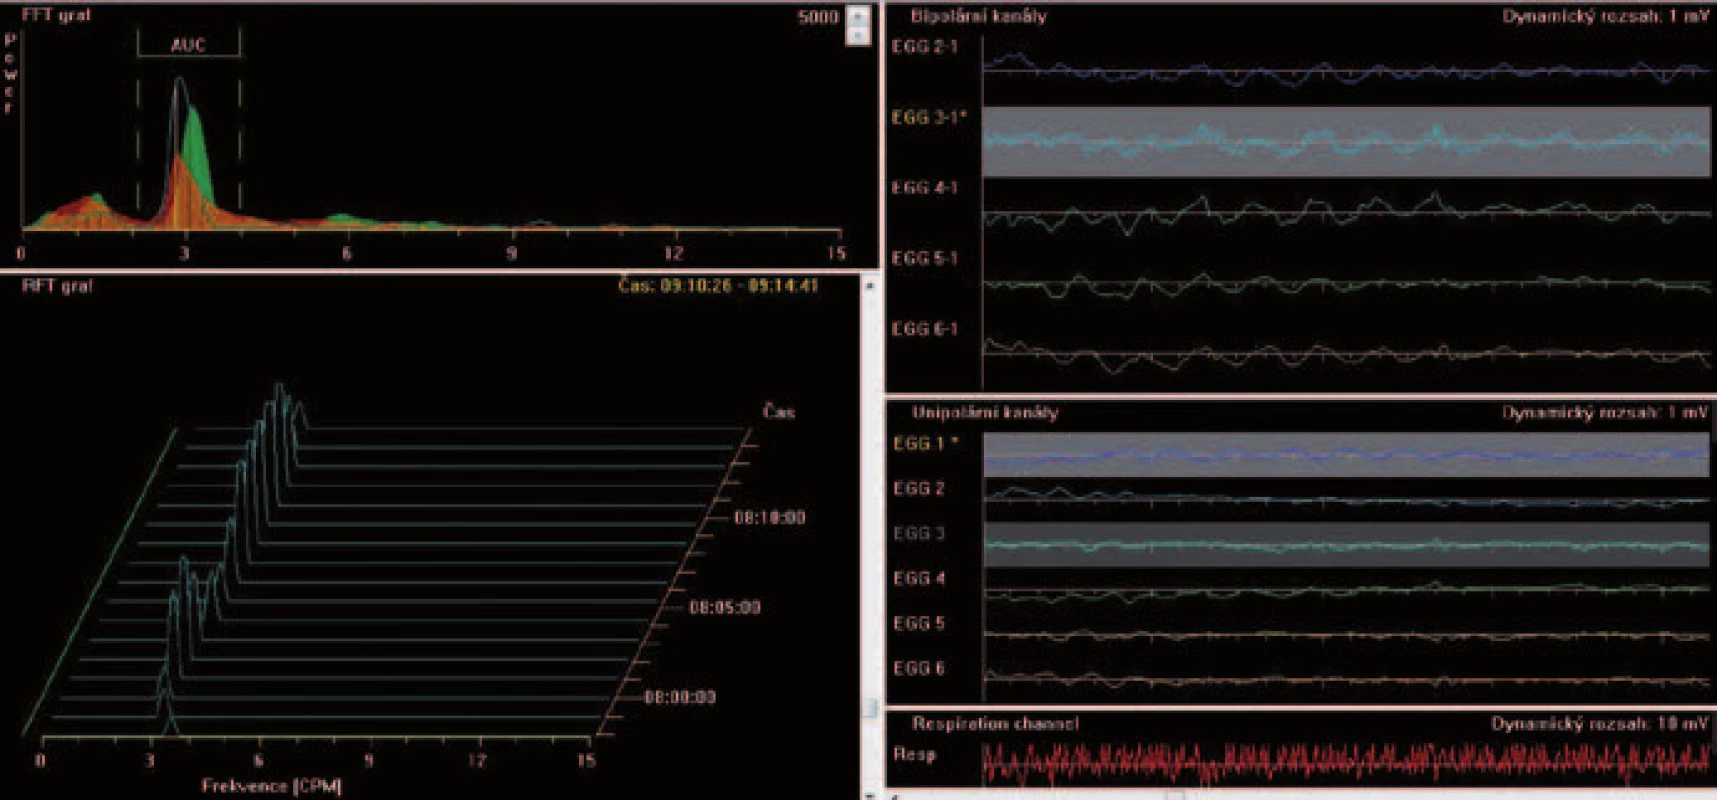 EGG. Vlevo dole dominantní frekvence, vlevo nahoře plocha amplitud, vpravo dole respirační kanál registrující dechové frekvence a pohybové artefakty.
Fig. 3. EGG. Dominant frequency (bottom left), amplitudes (on top left), respiratory channel registrating respiratory frequency and potion artefacts (bottom right).